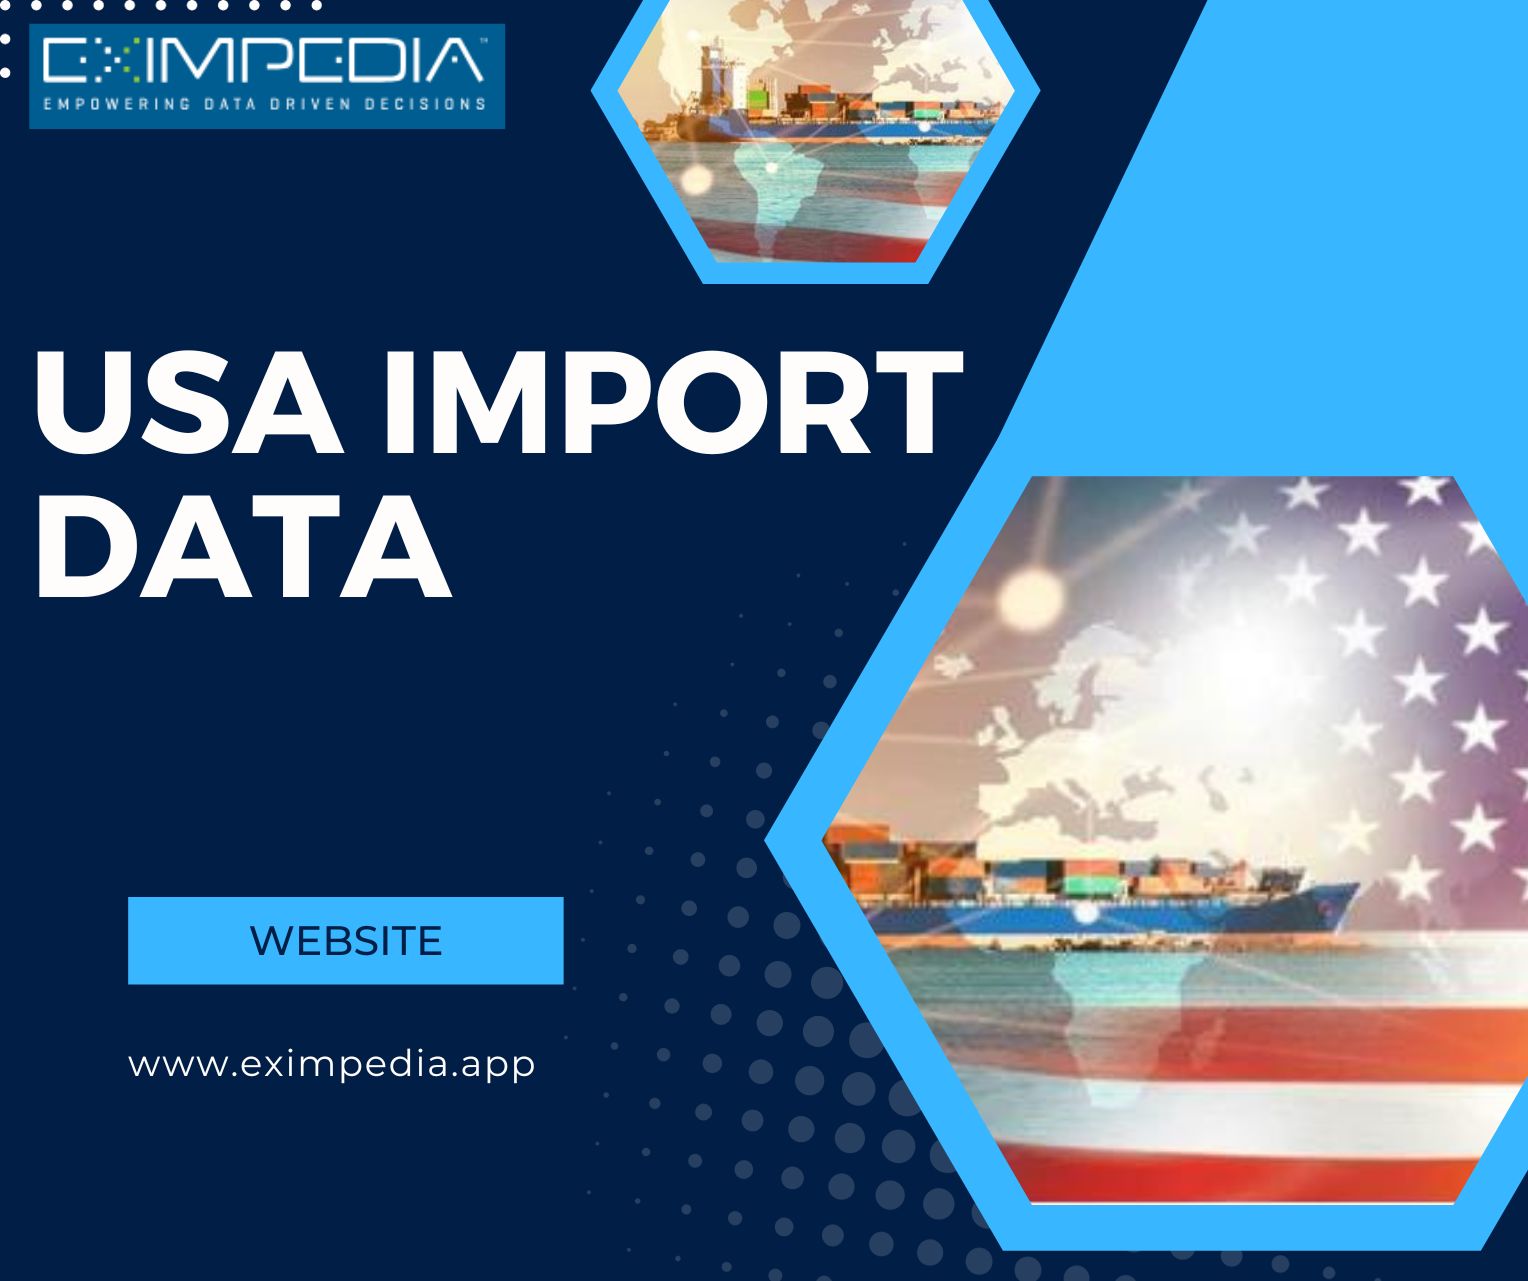 USA IMPORT
DATA

J ' pls
-e = =
WEBSITE ms” eA

www.eximpedia.app